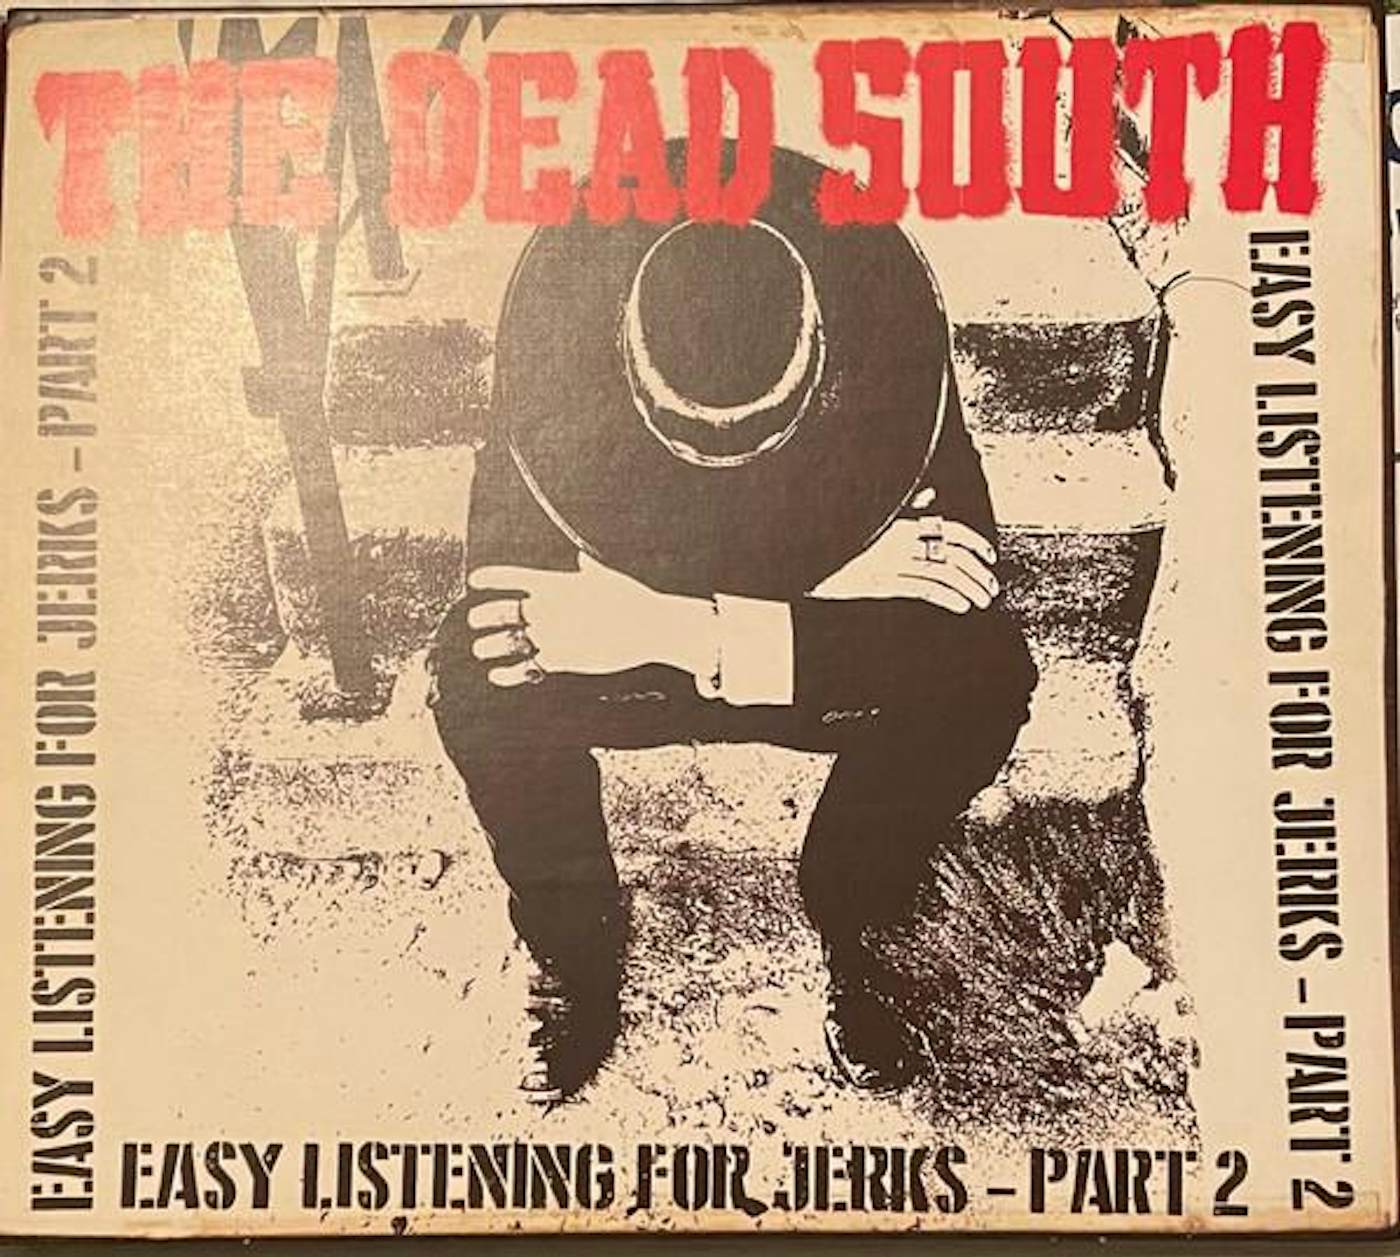 The Dead South EASY LISTENING FOR JERKS PT. 2 CD